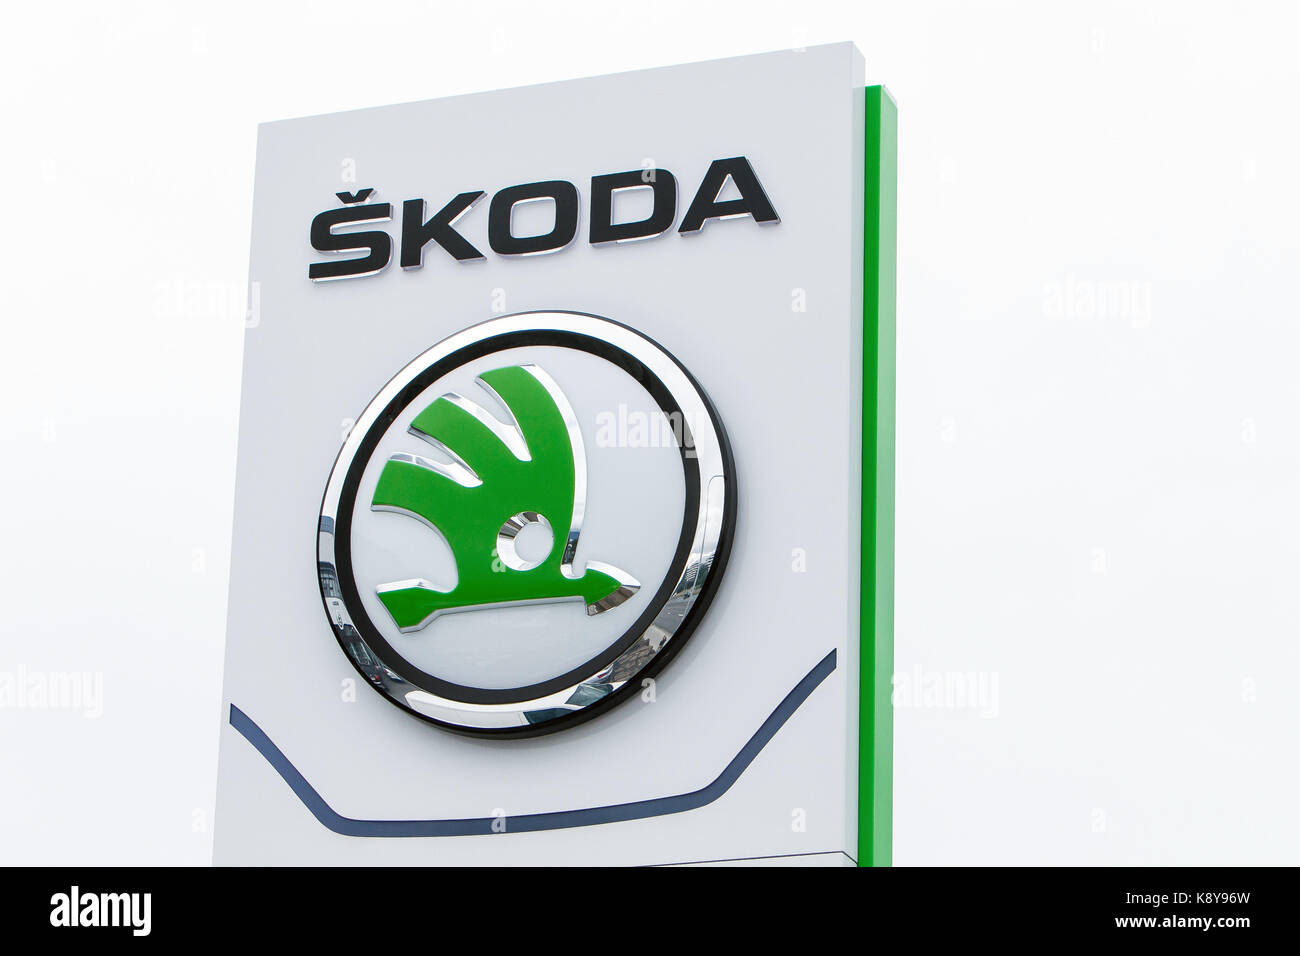 Skoda logo at a Skoda dealership in Reykjavik. Stock Photo